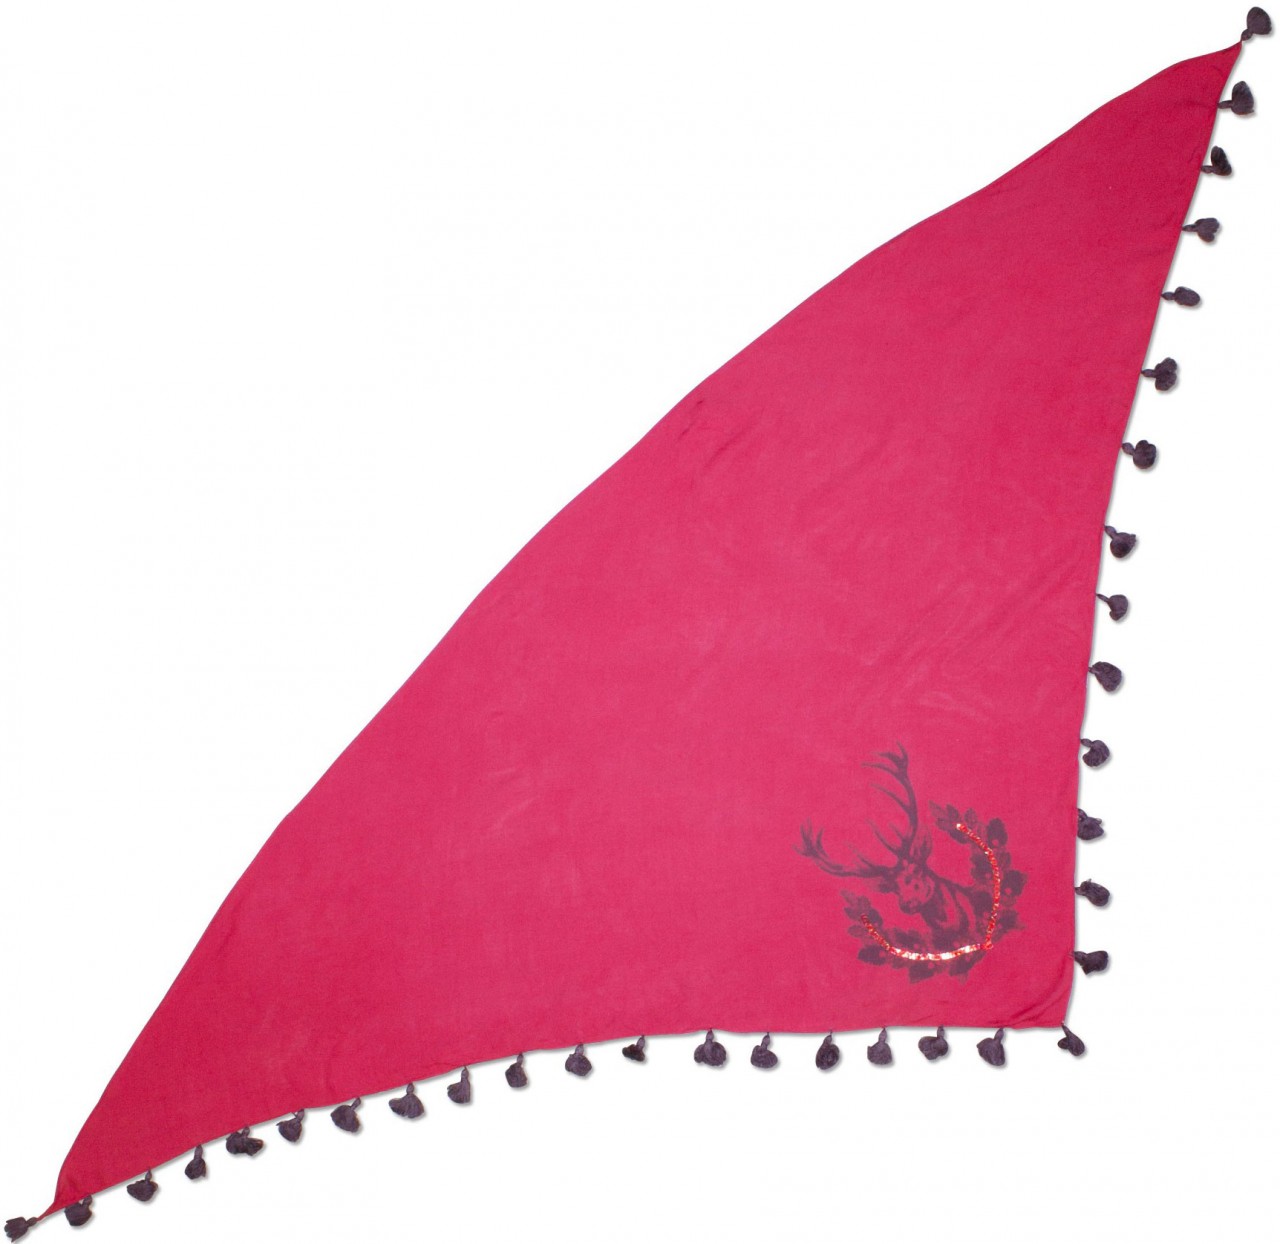 Dreiecks-Trachtentuch Hirsch pink